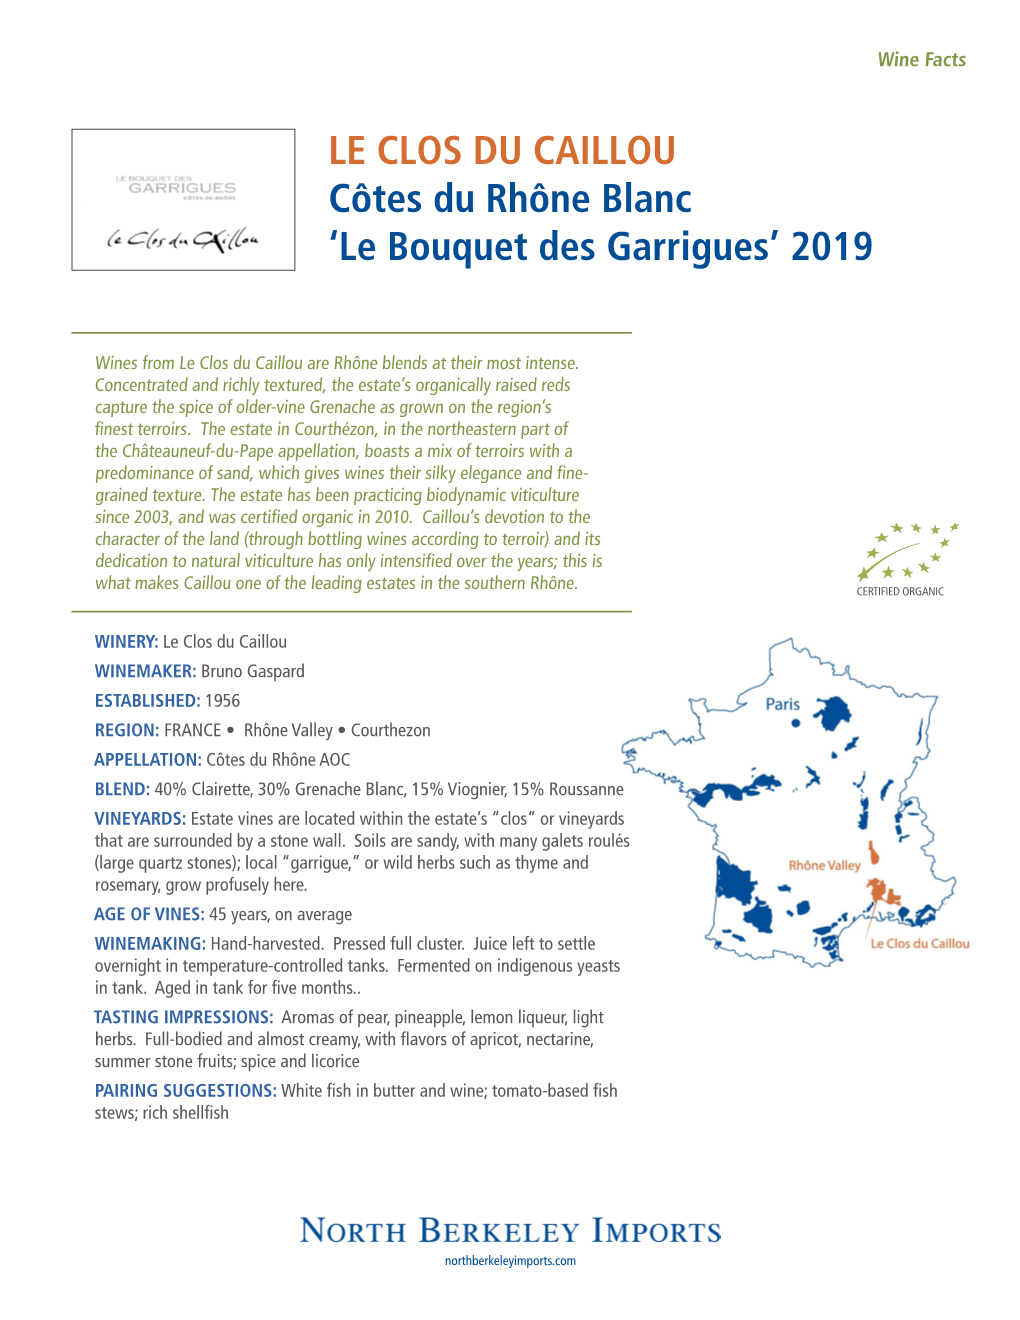 LE CLOS DU CAILLOU Côtes Du Rhône Blanc ‘Le Bouquet Des Garrigues’ 2019